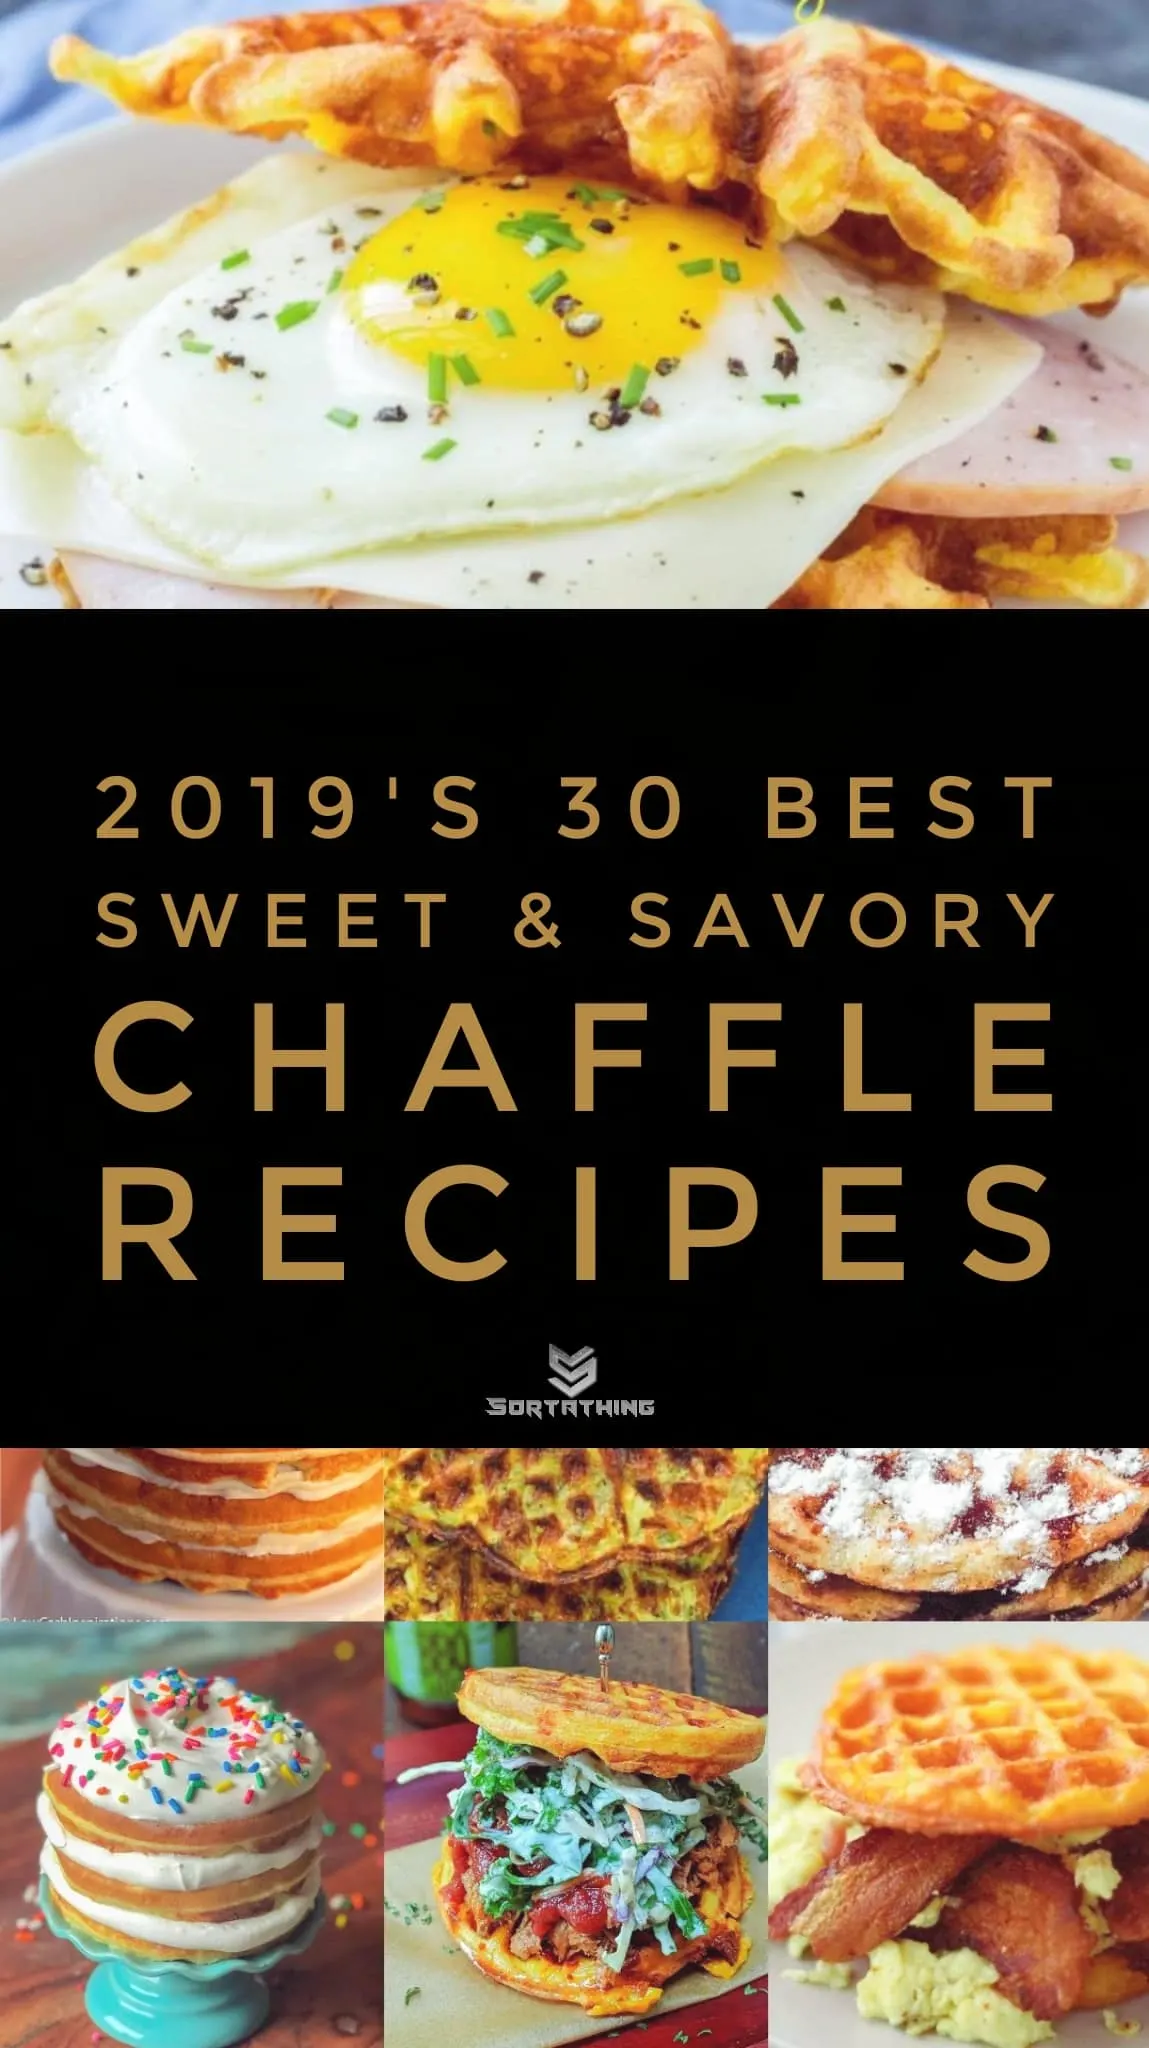 Savory Cheesy Waffle aka a Chaffle – Cabot Creamery